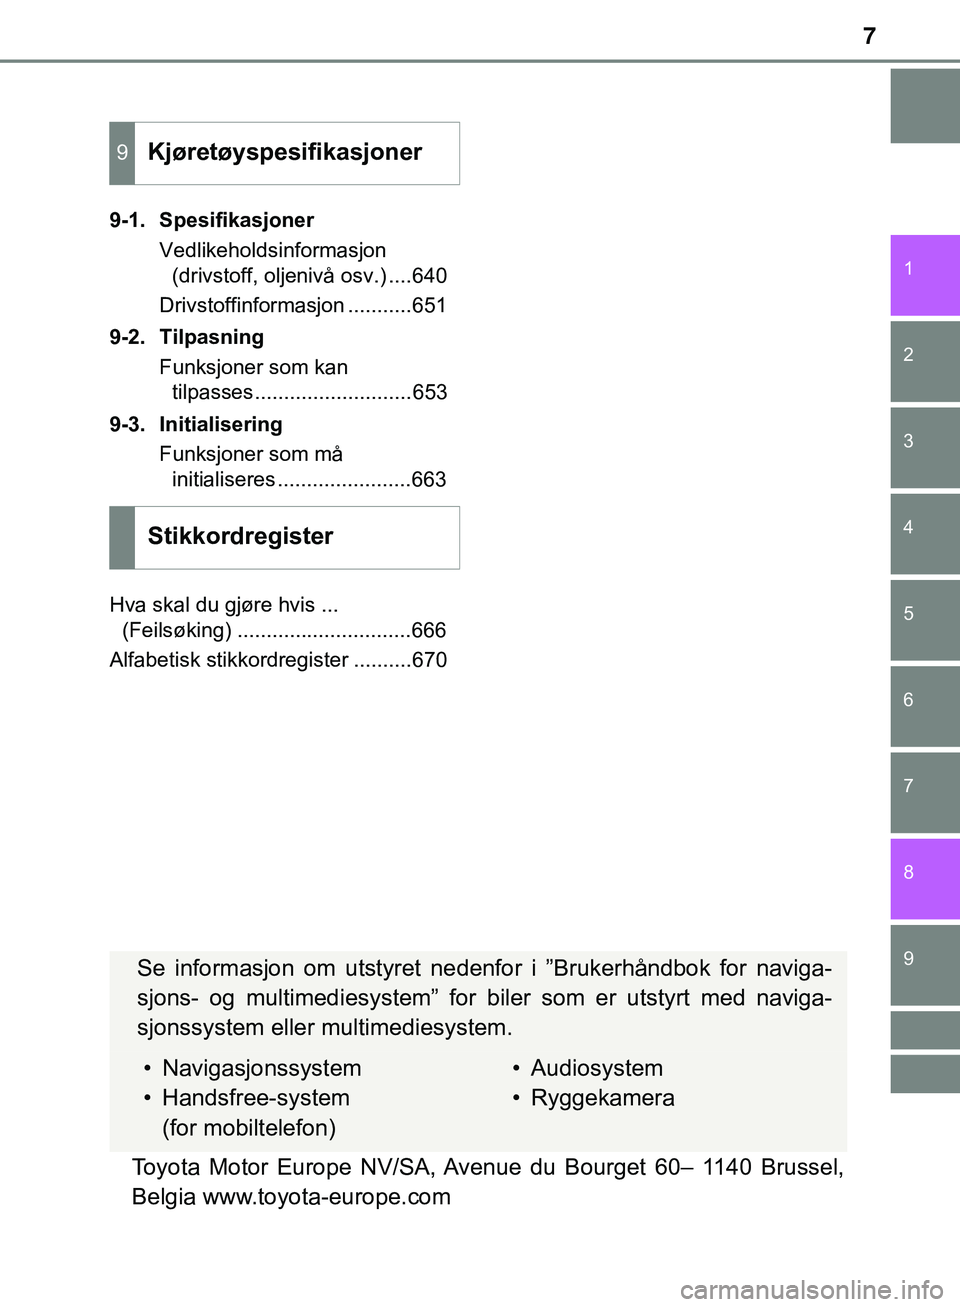 TOYOTA C-HR 2018  Instruksjoner for bruk (in Norwegian) 7
1
6 5
4
3
2
C-HR_HV_OM_Europe_OM10576NO
9
8
7
9-1. SpesifikasjonerVedlikeholdsinformasjon(drivstoff, oljenivå osv.) ....640
Drivstoffinformasjon ...........651
9-2. Tilpasning Funksjoner som kan ti